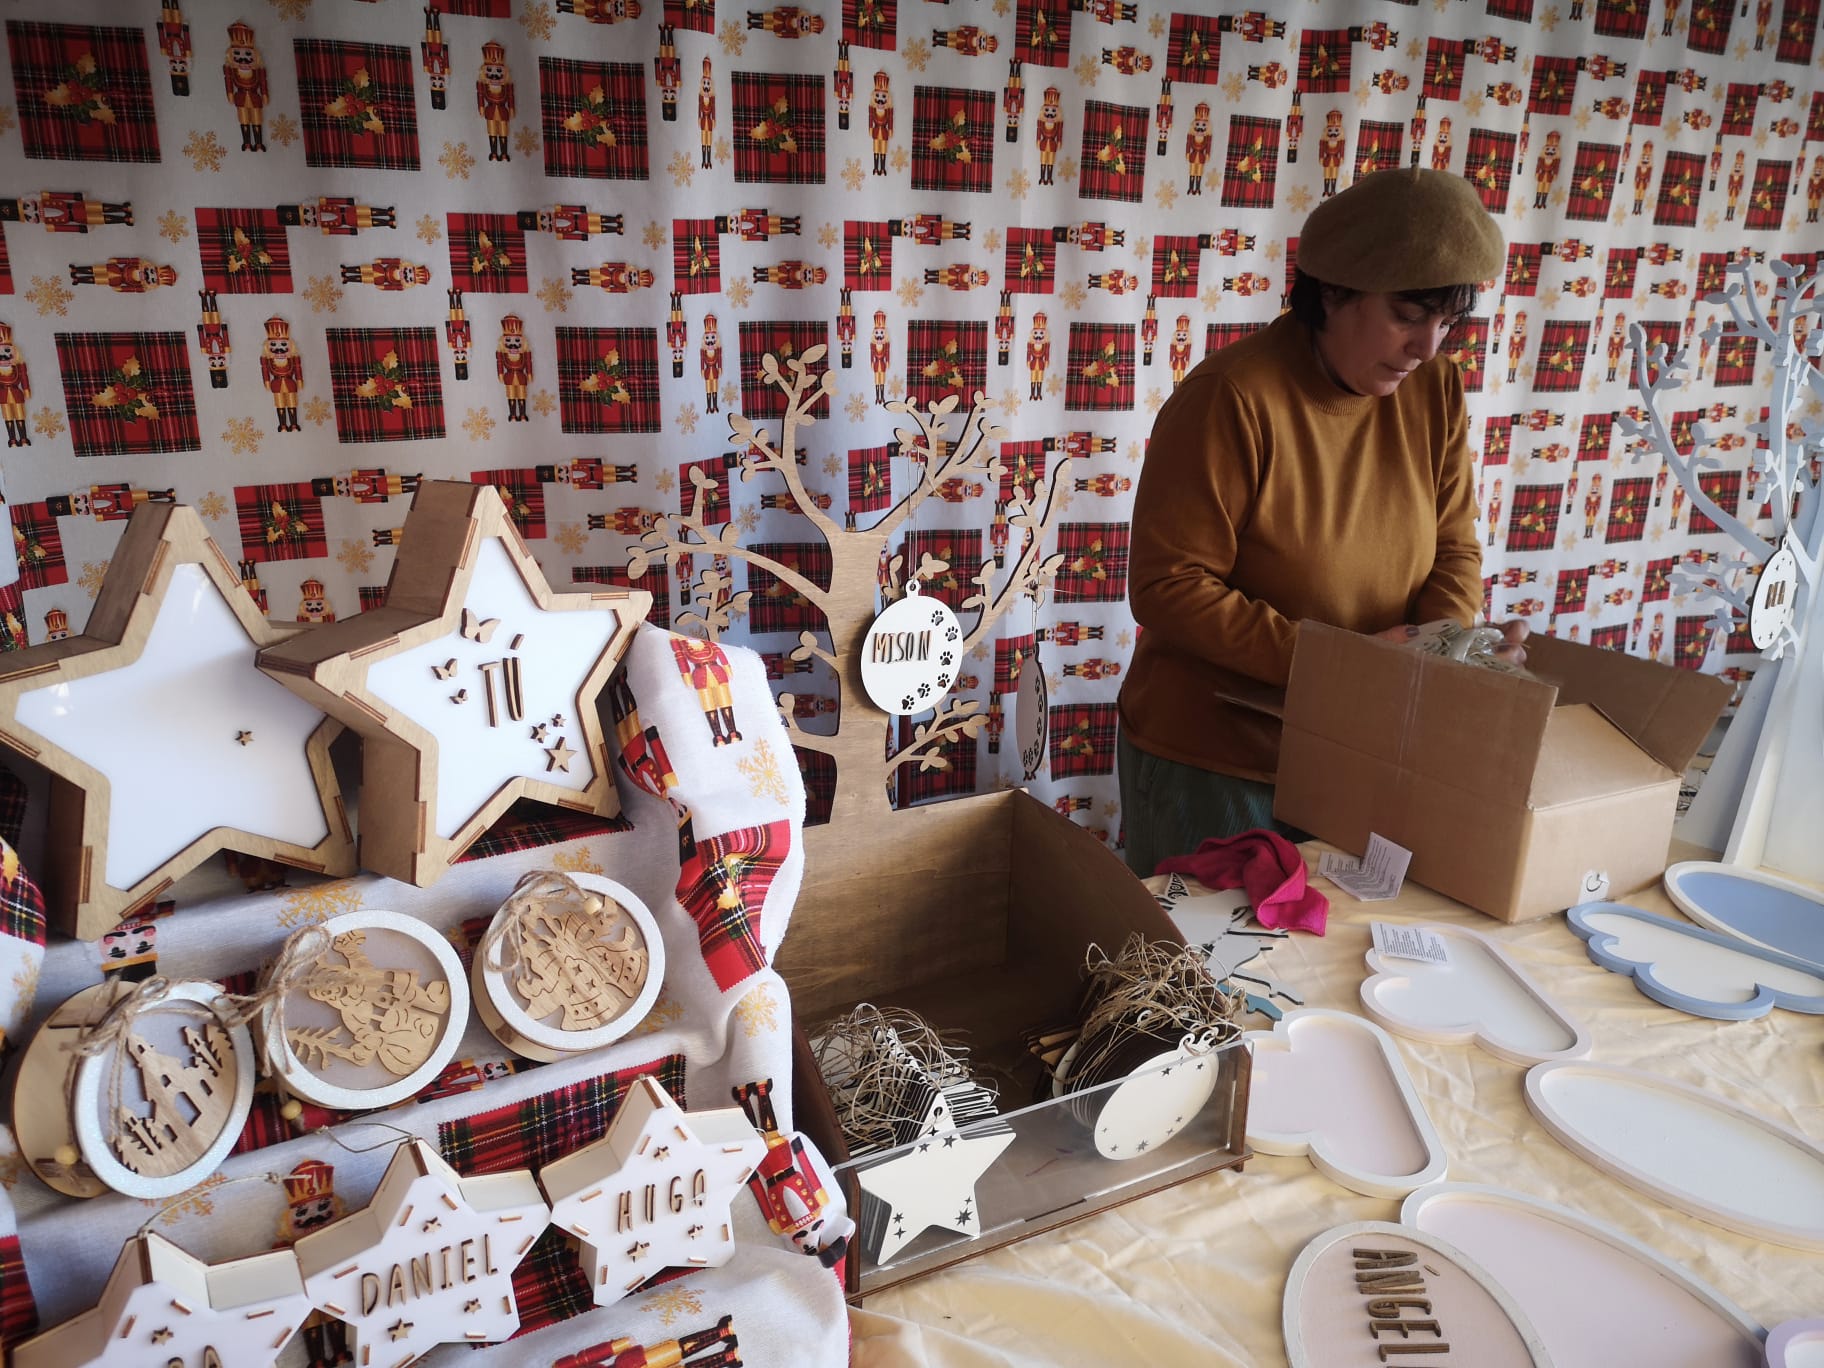 40 artesanos regresan a la ubicación tradicional de este mercado que empieza su actividad el jueves 2 de diciembre.